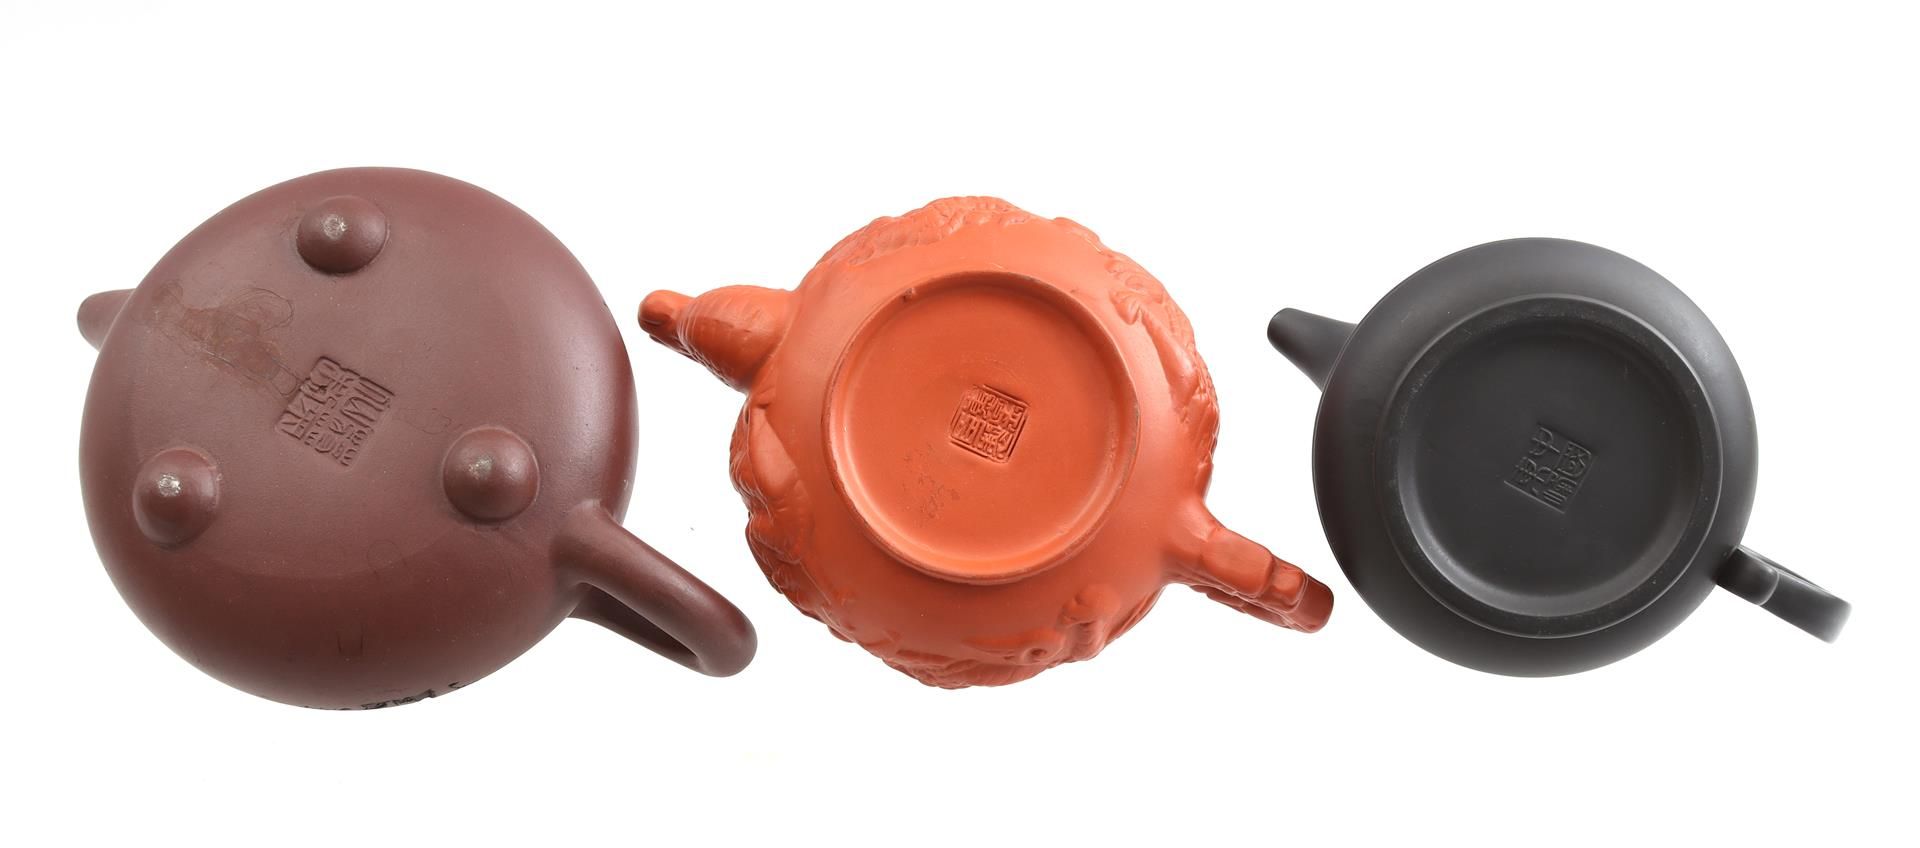 3 Yixing earthenware teapots, China 21th - Bild 3 aus 3